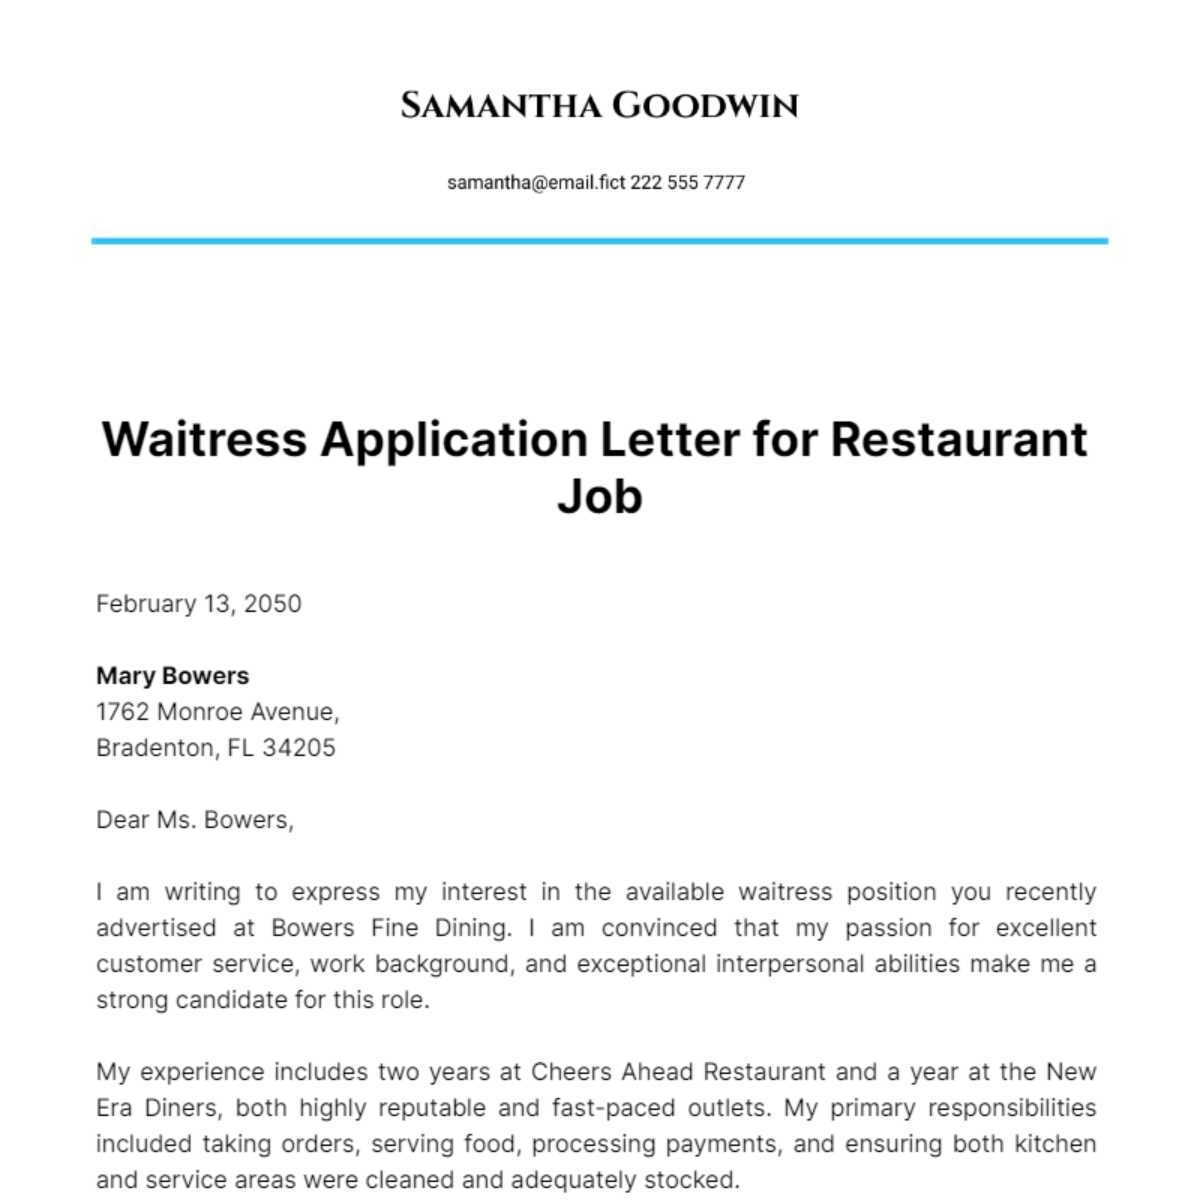 Waitress Application Letter for Restaurant Job Template